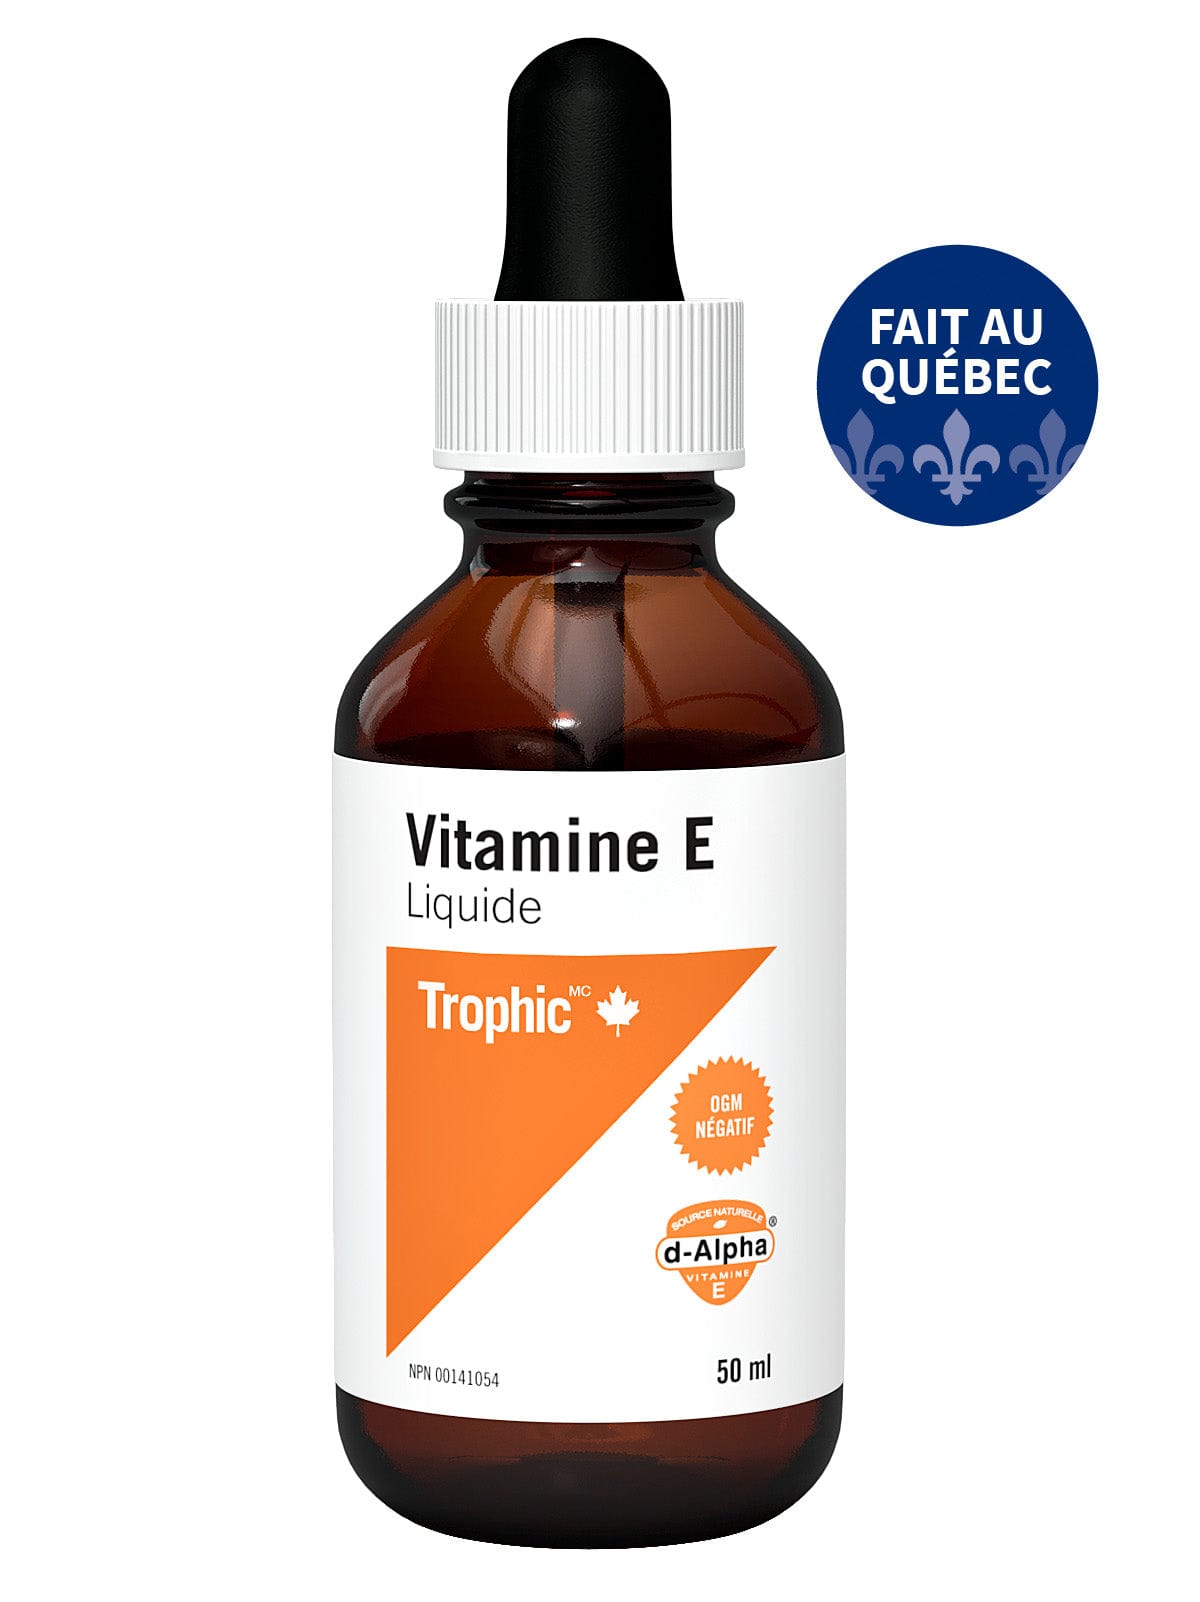 TROPHIC Soins & Beauté Vitamine E 50ml